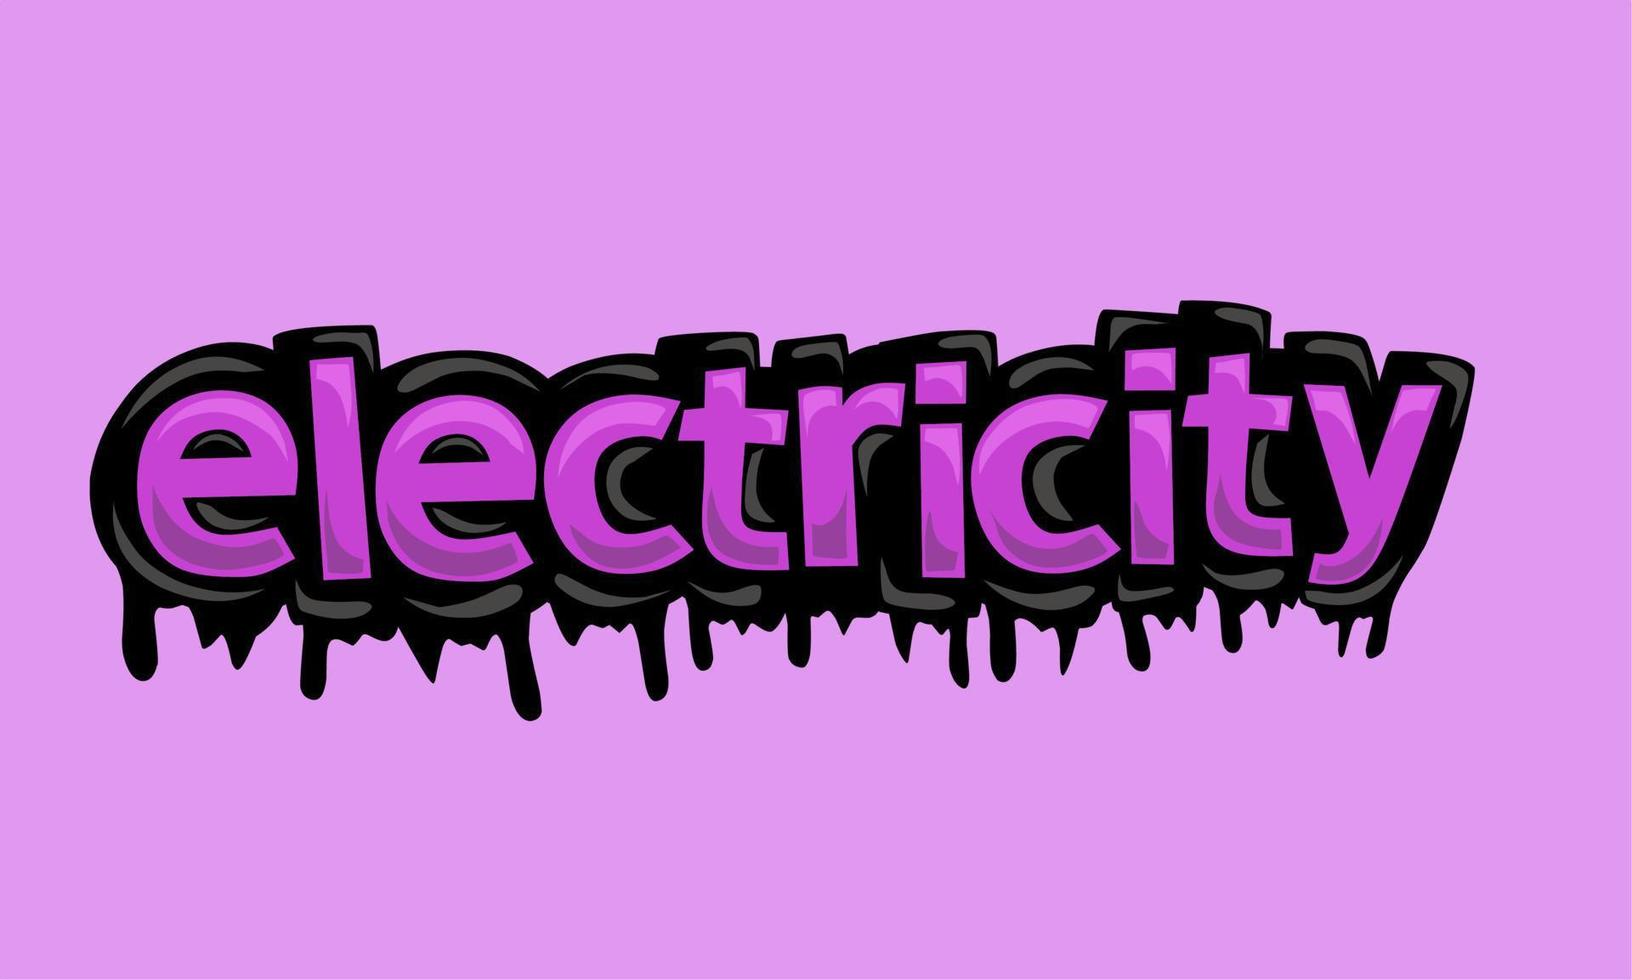 diseño de vector de escritura de electricidad sobre fondo rosa